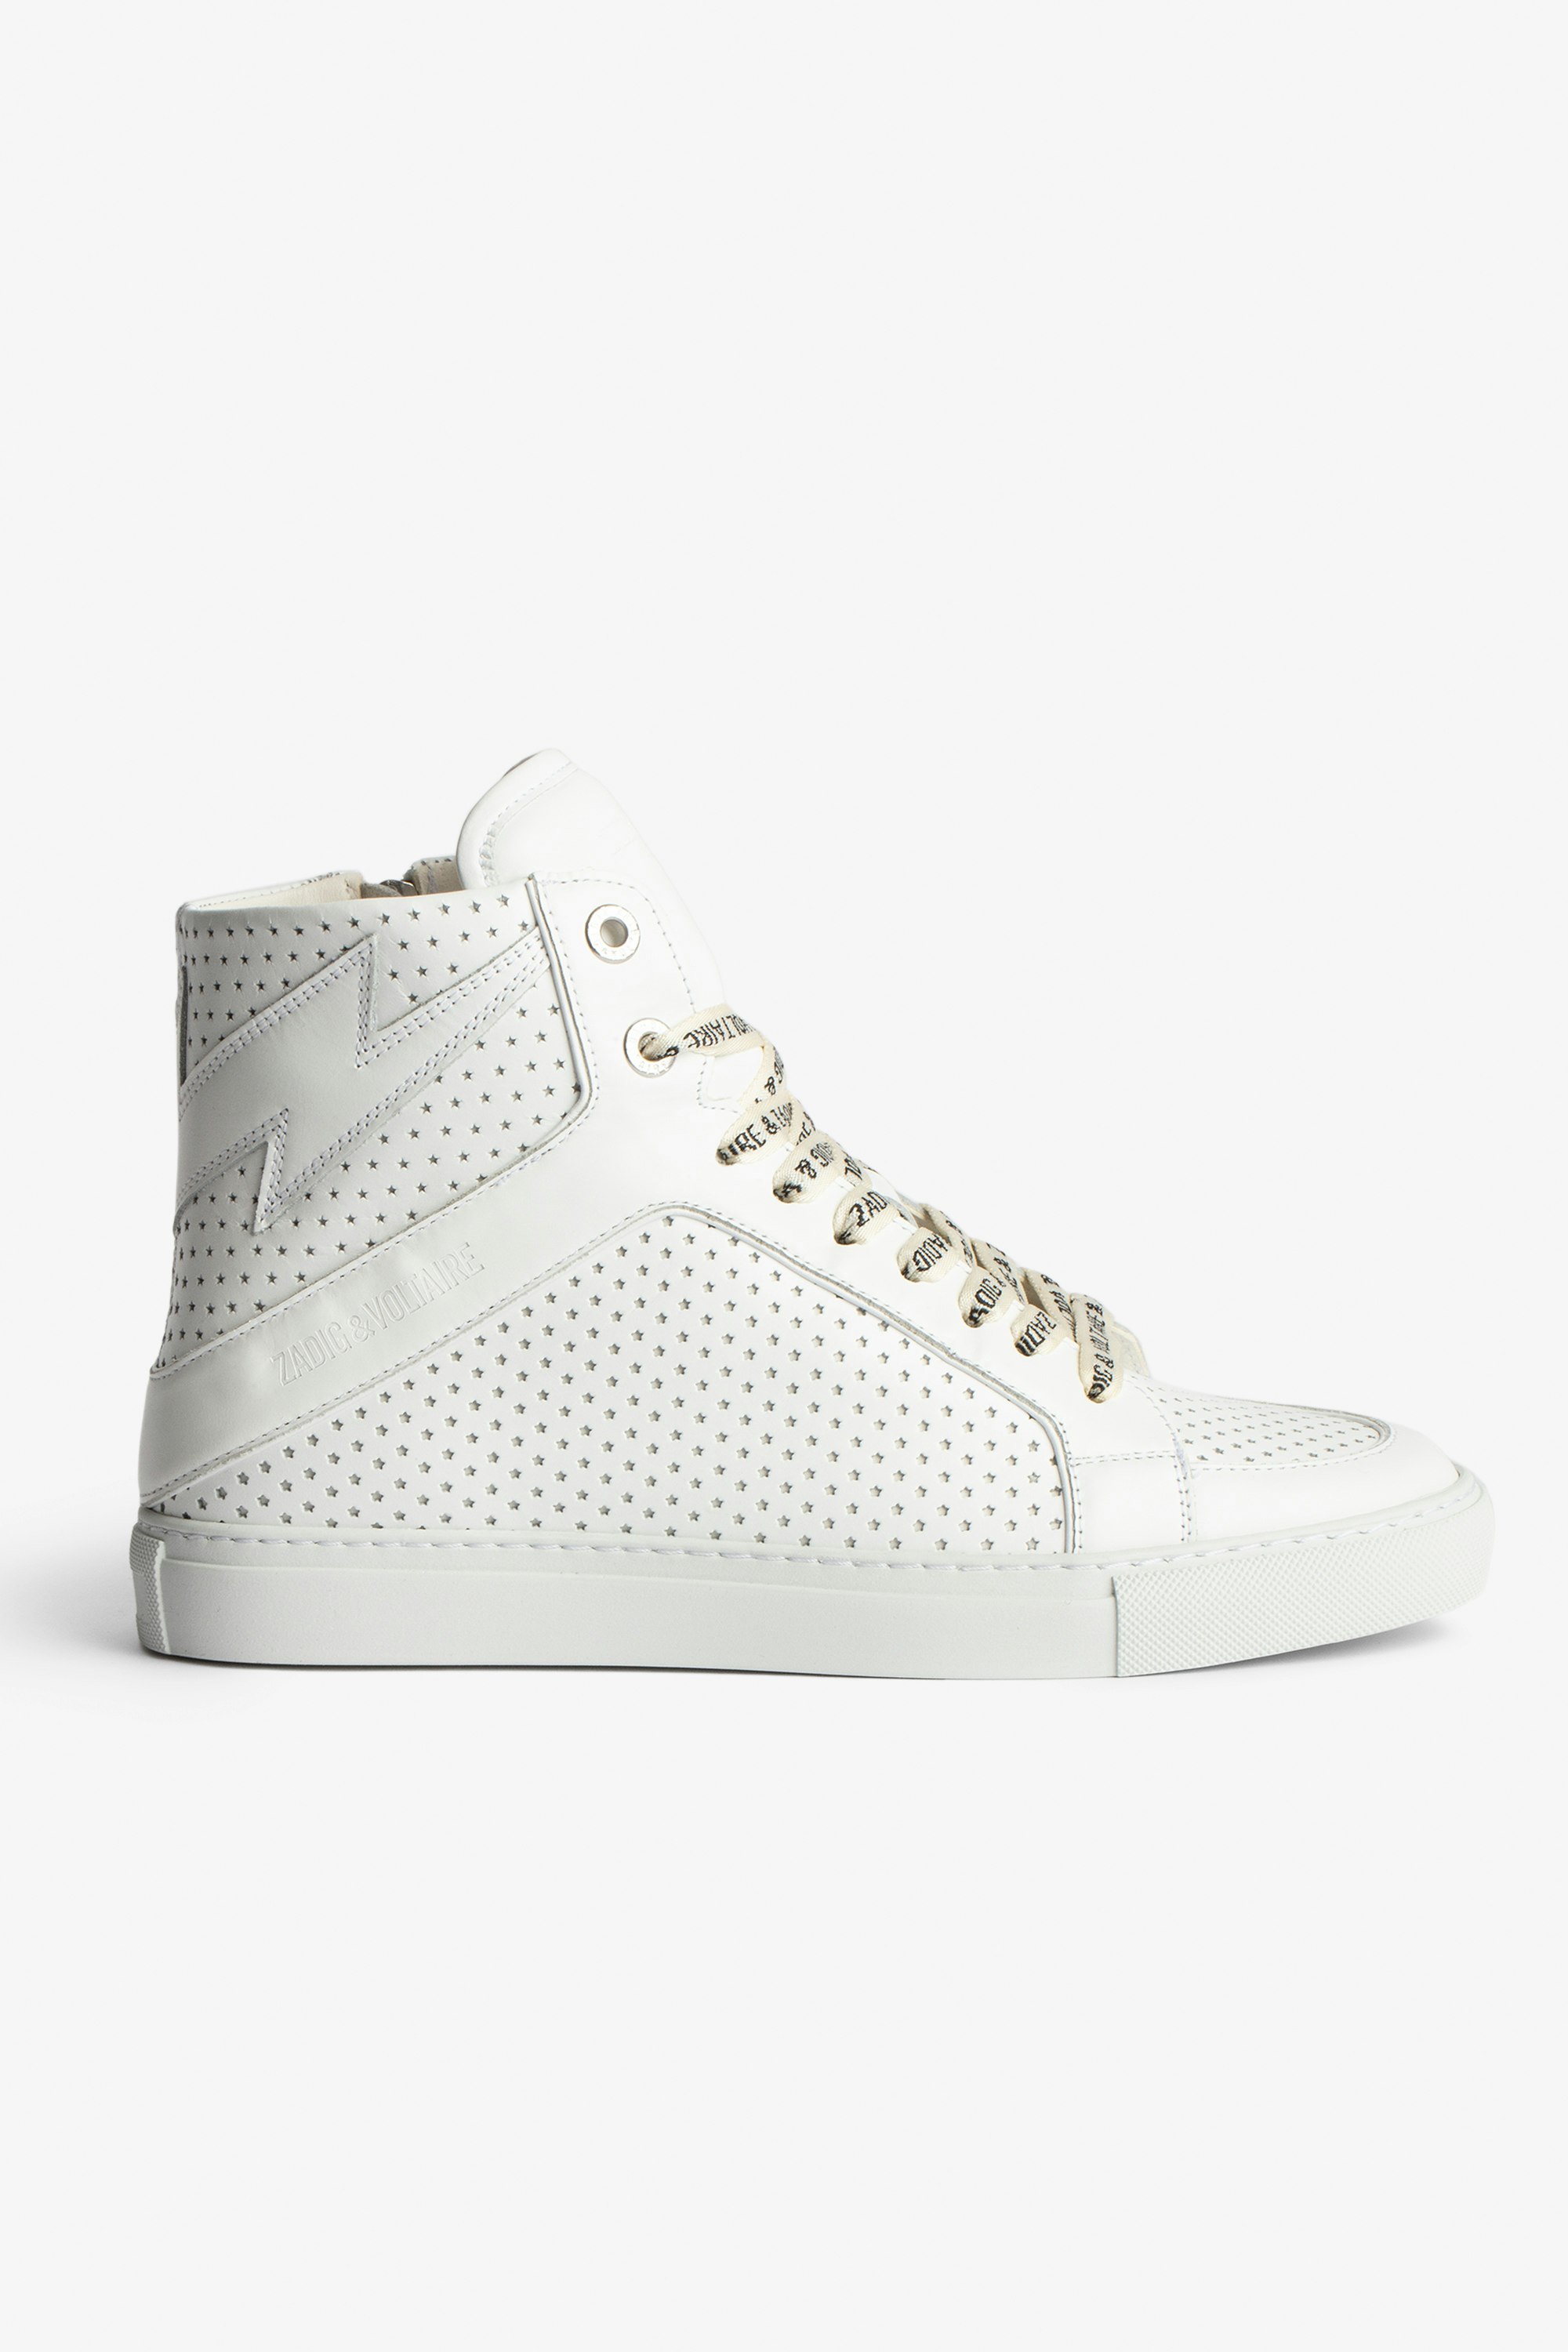 Hohe Sneakers ZV1747 High Flash - Hohe Damen-Sneakers aus weißem Glattleder mit perforierten Sternen.